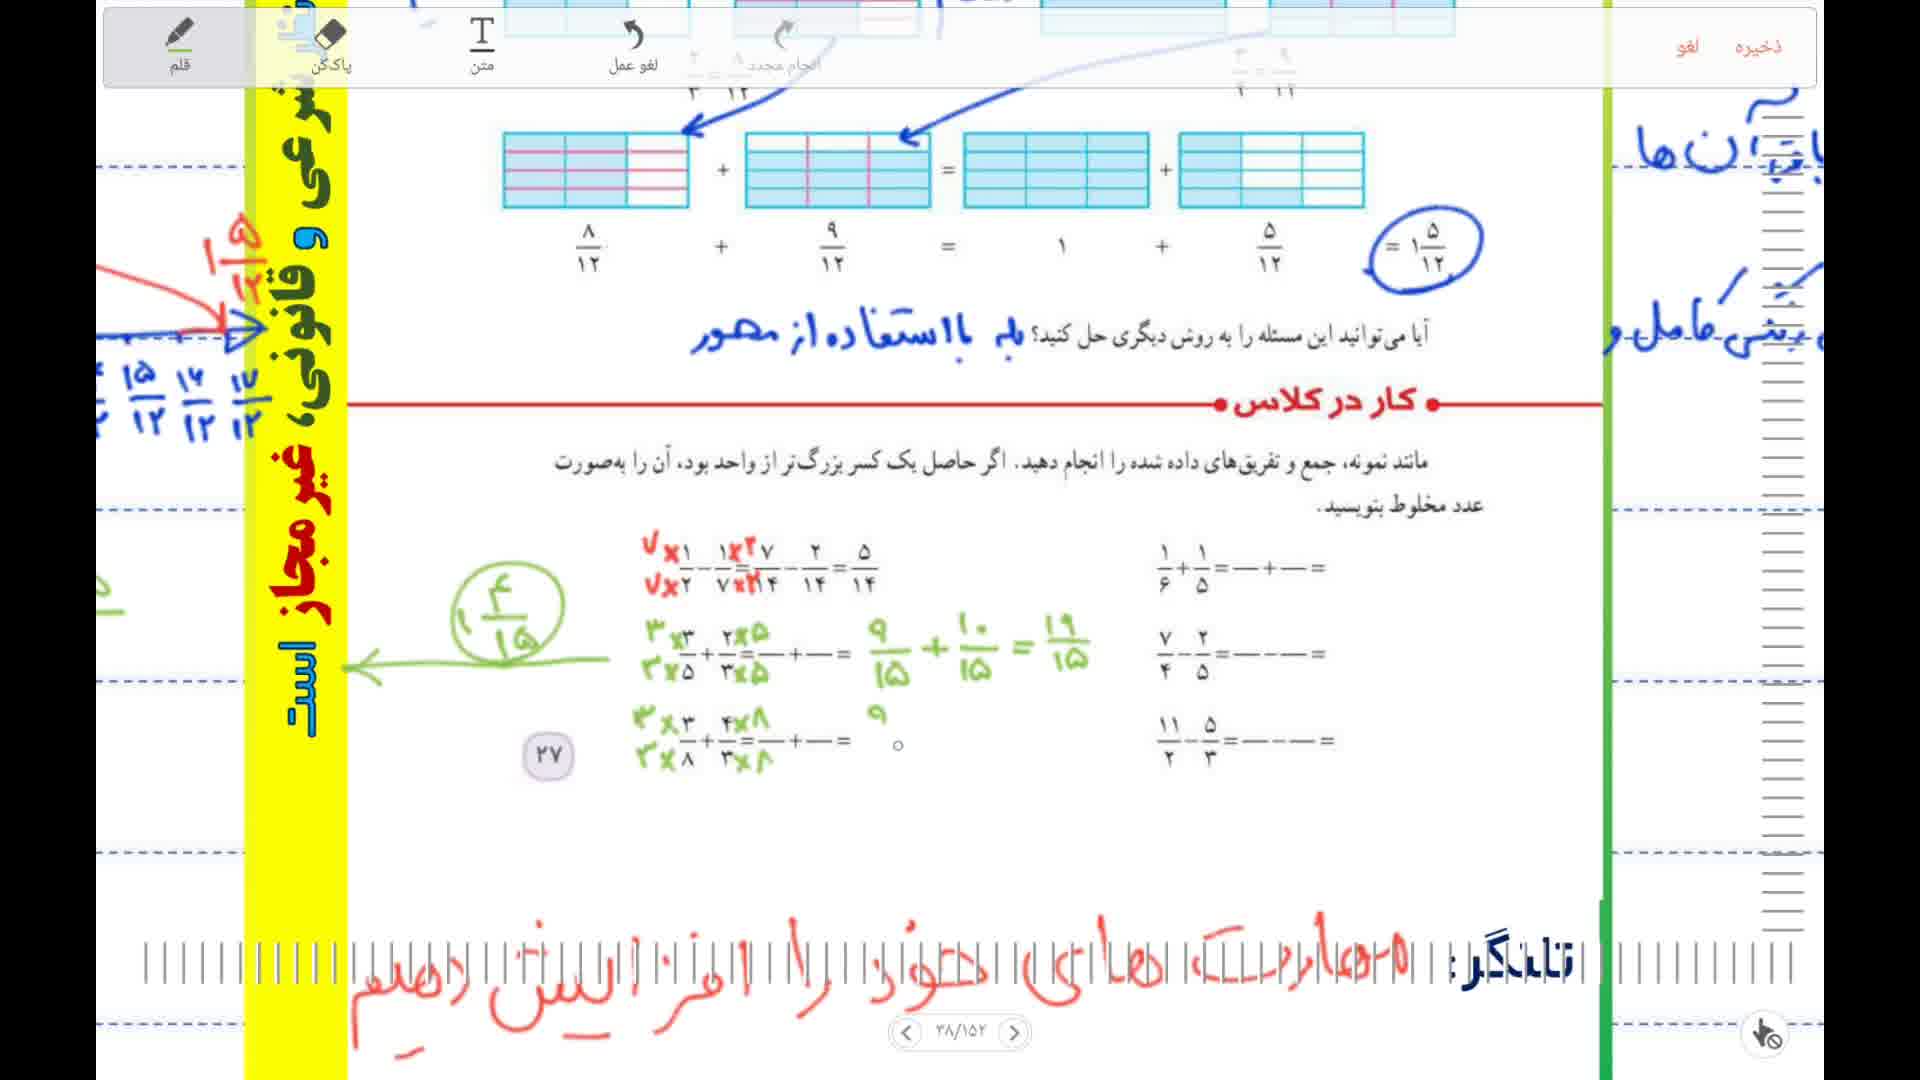 آموزش حل ریاضی پایه پنجم صفحه27 فصل2 جمع و تفریق عددهای مخلوط